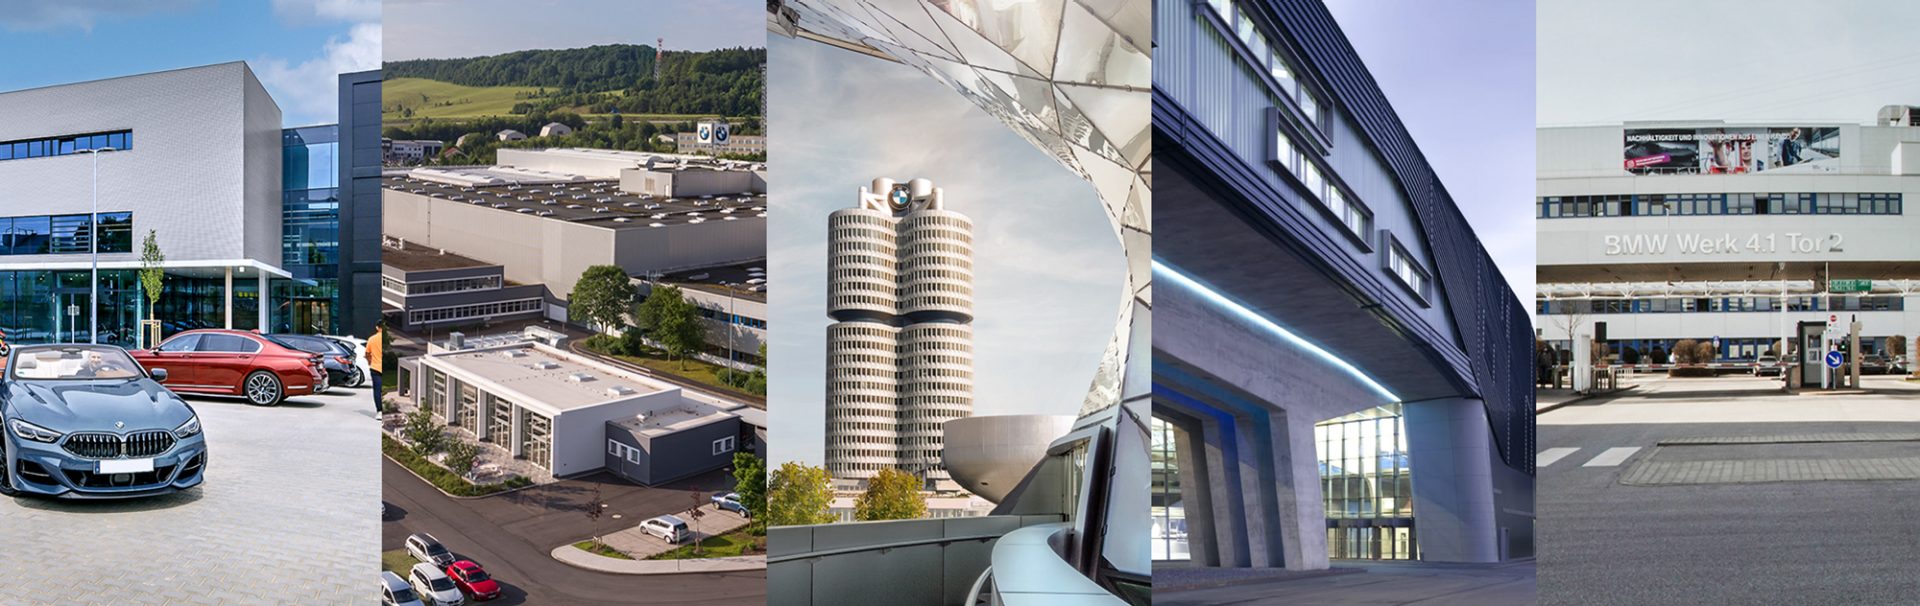 Das Bild zeigt den BMW Vierzylinder und das BMW Museum.